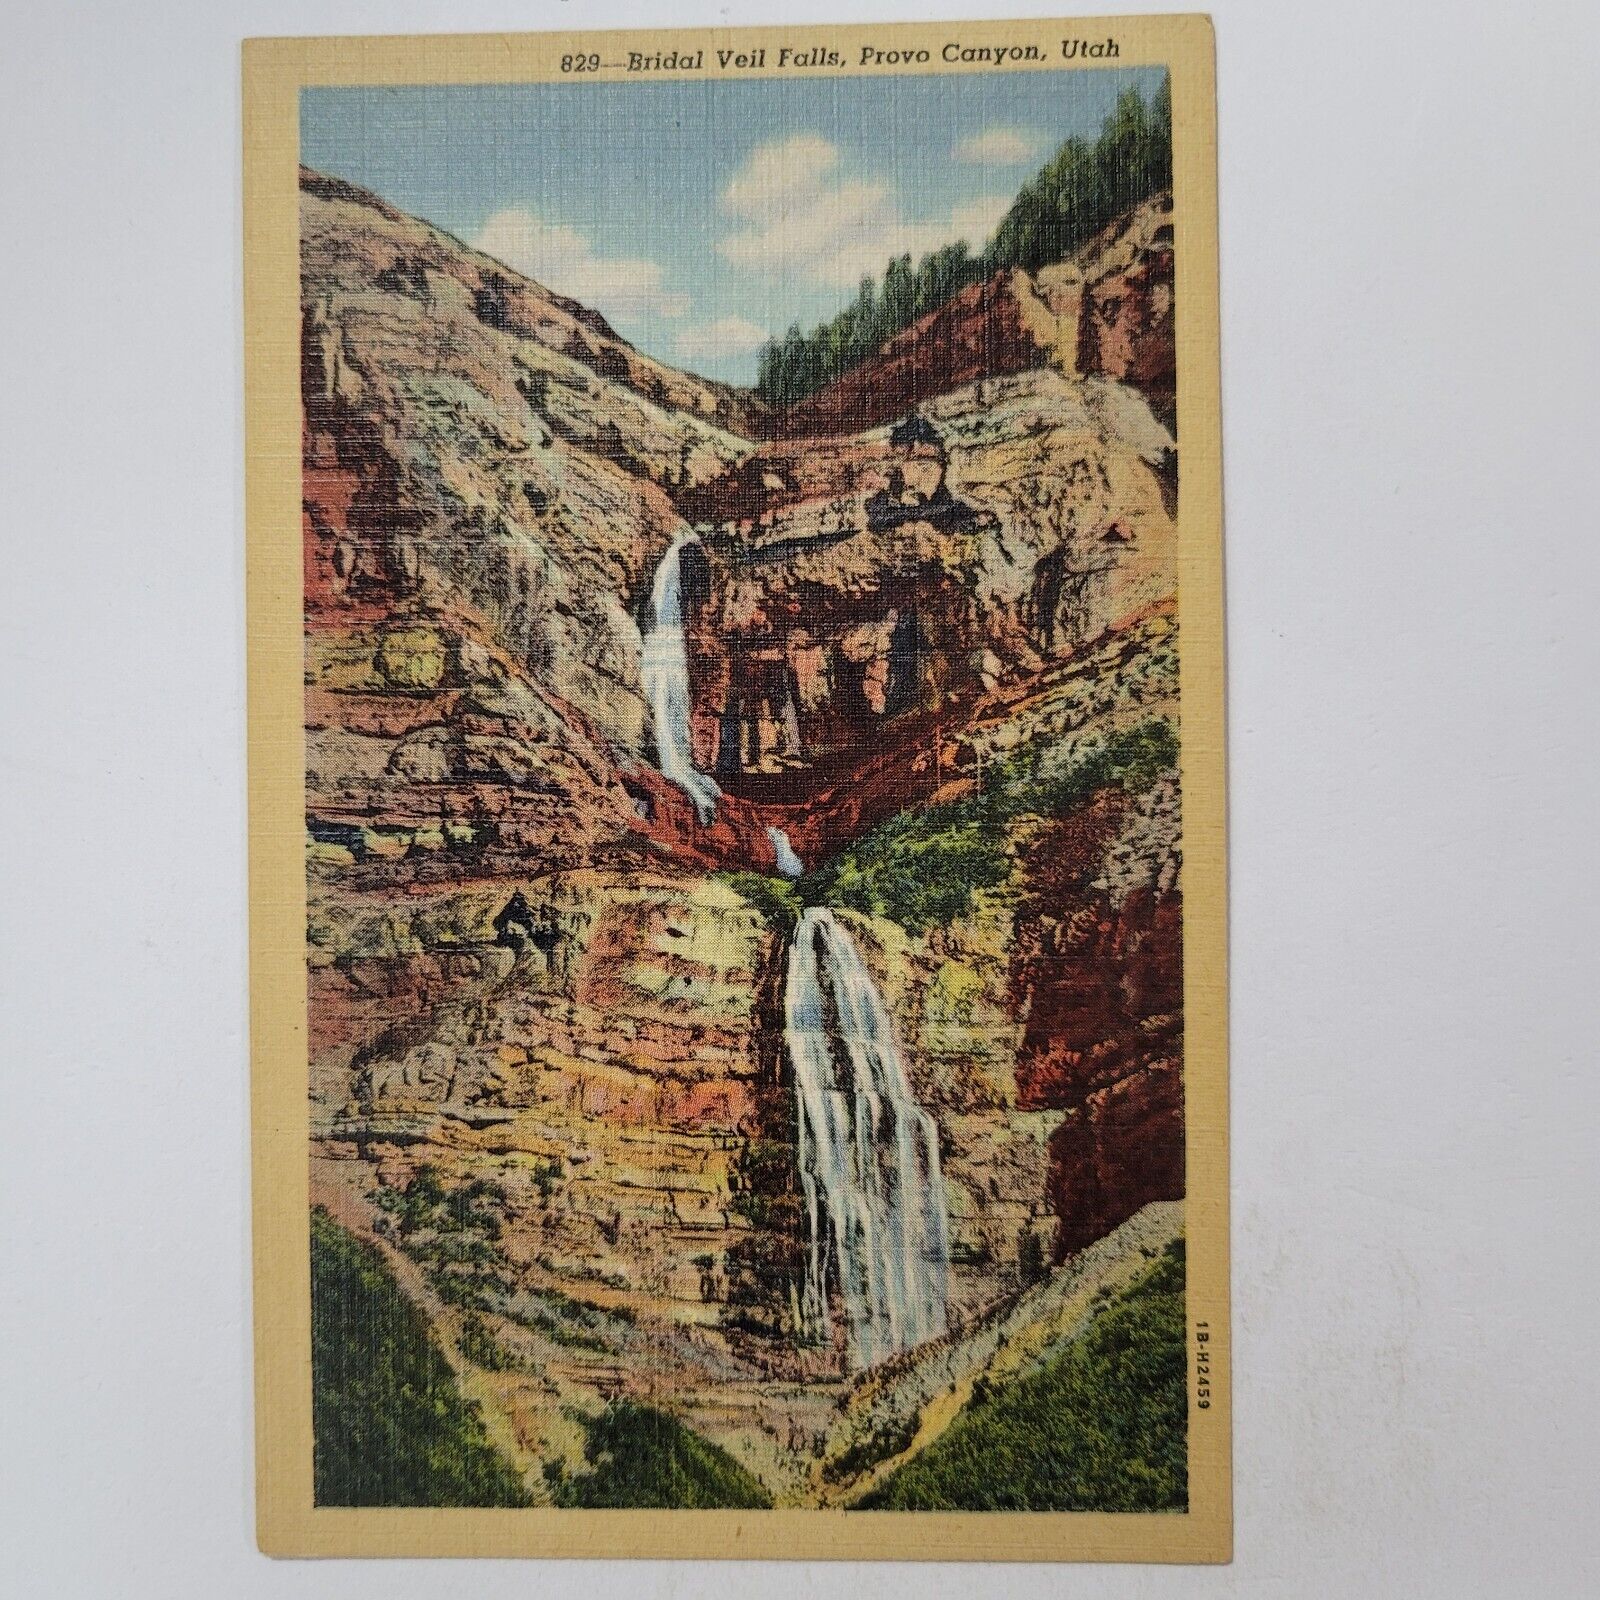 Bridal Veil Water Falls In Provo Canyon Utah UT Vintage Postcard Red Rocks